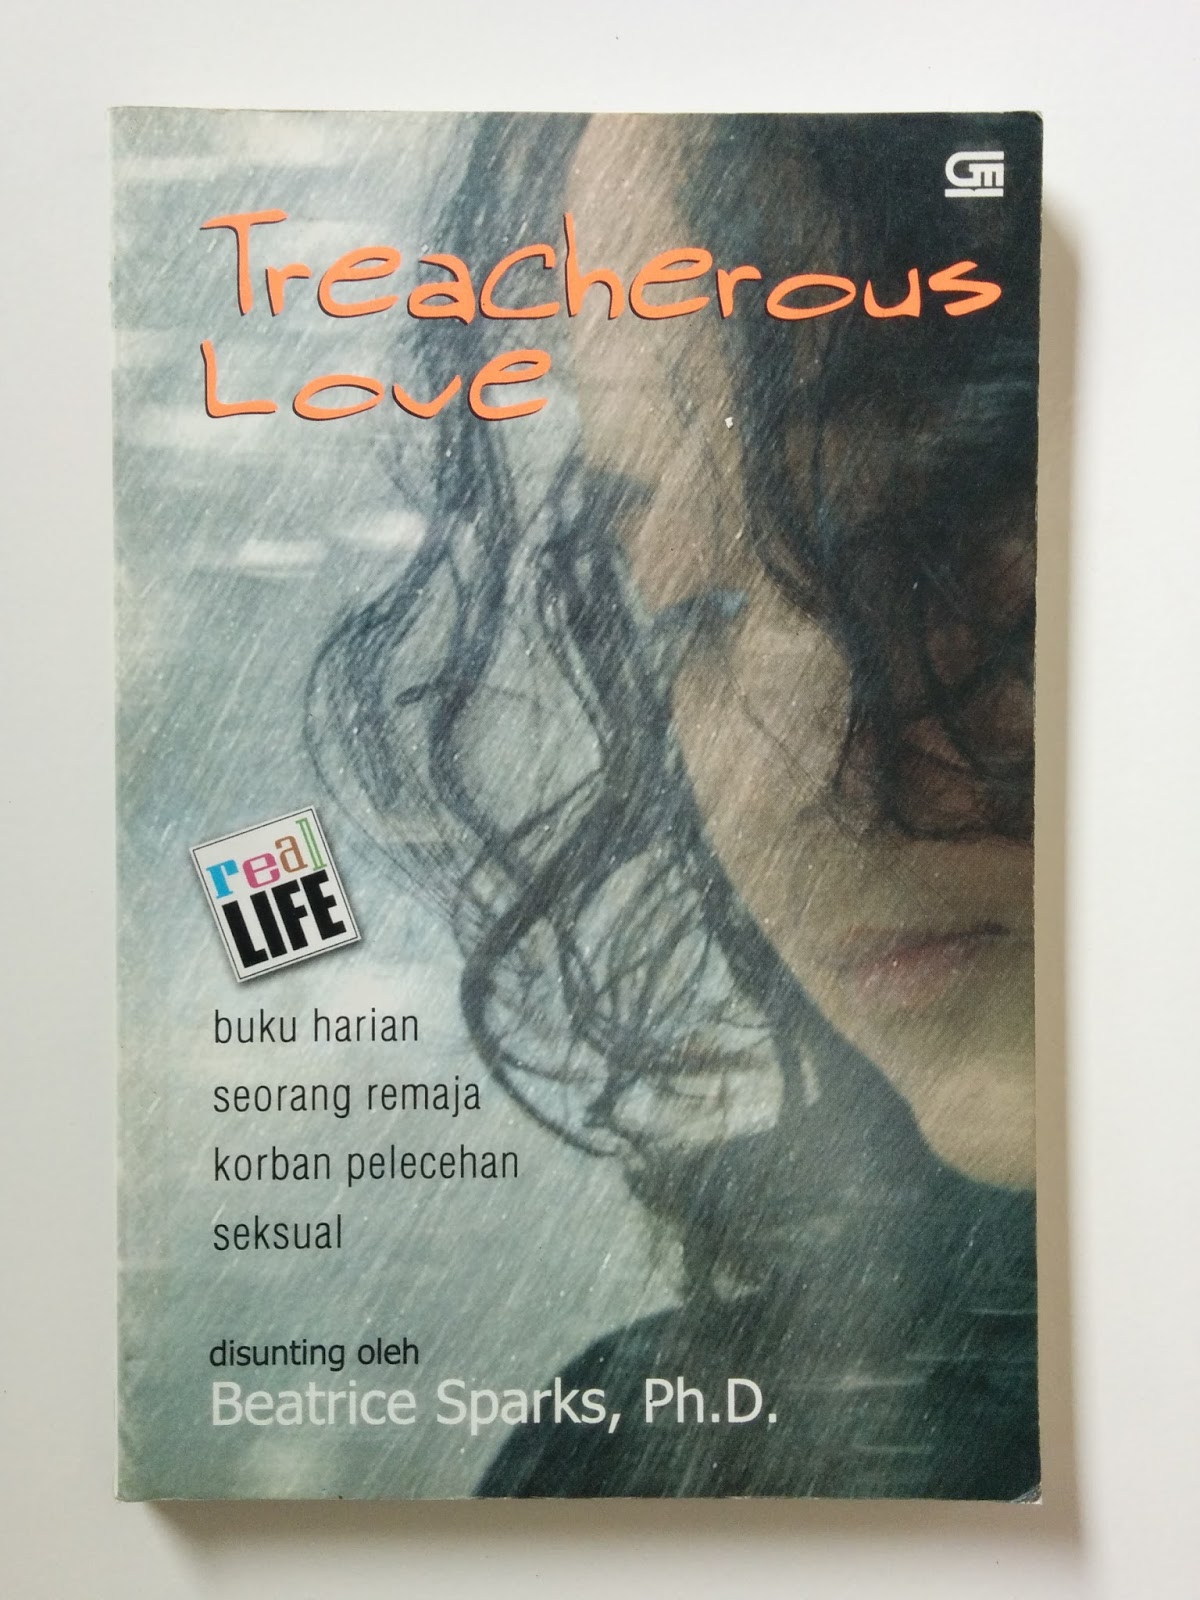 Treacherous love :  Buku harian seorang remaja korban pelecehan seksual